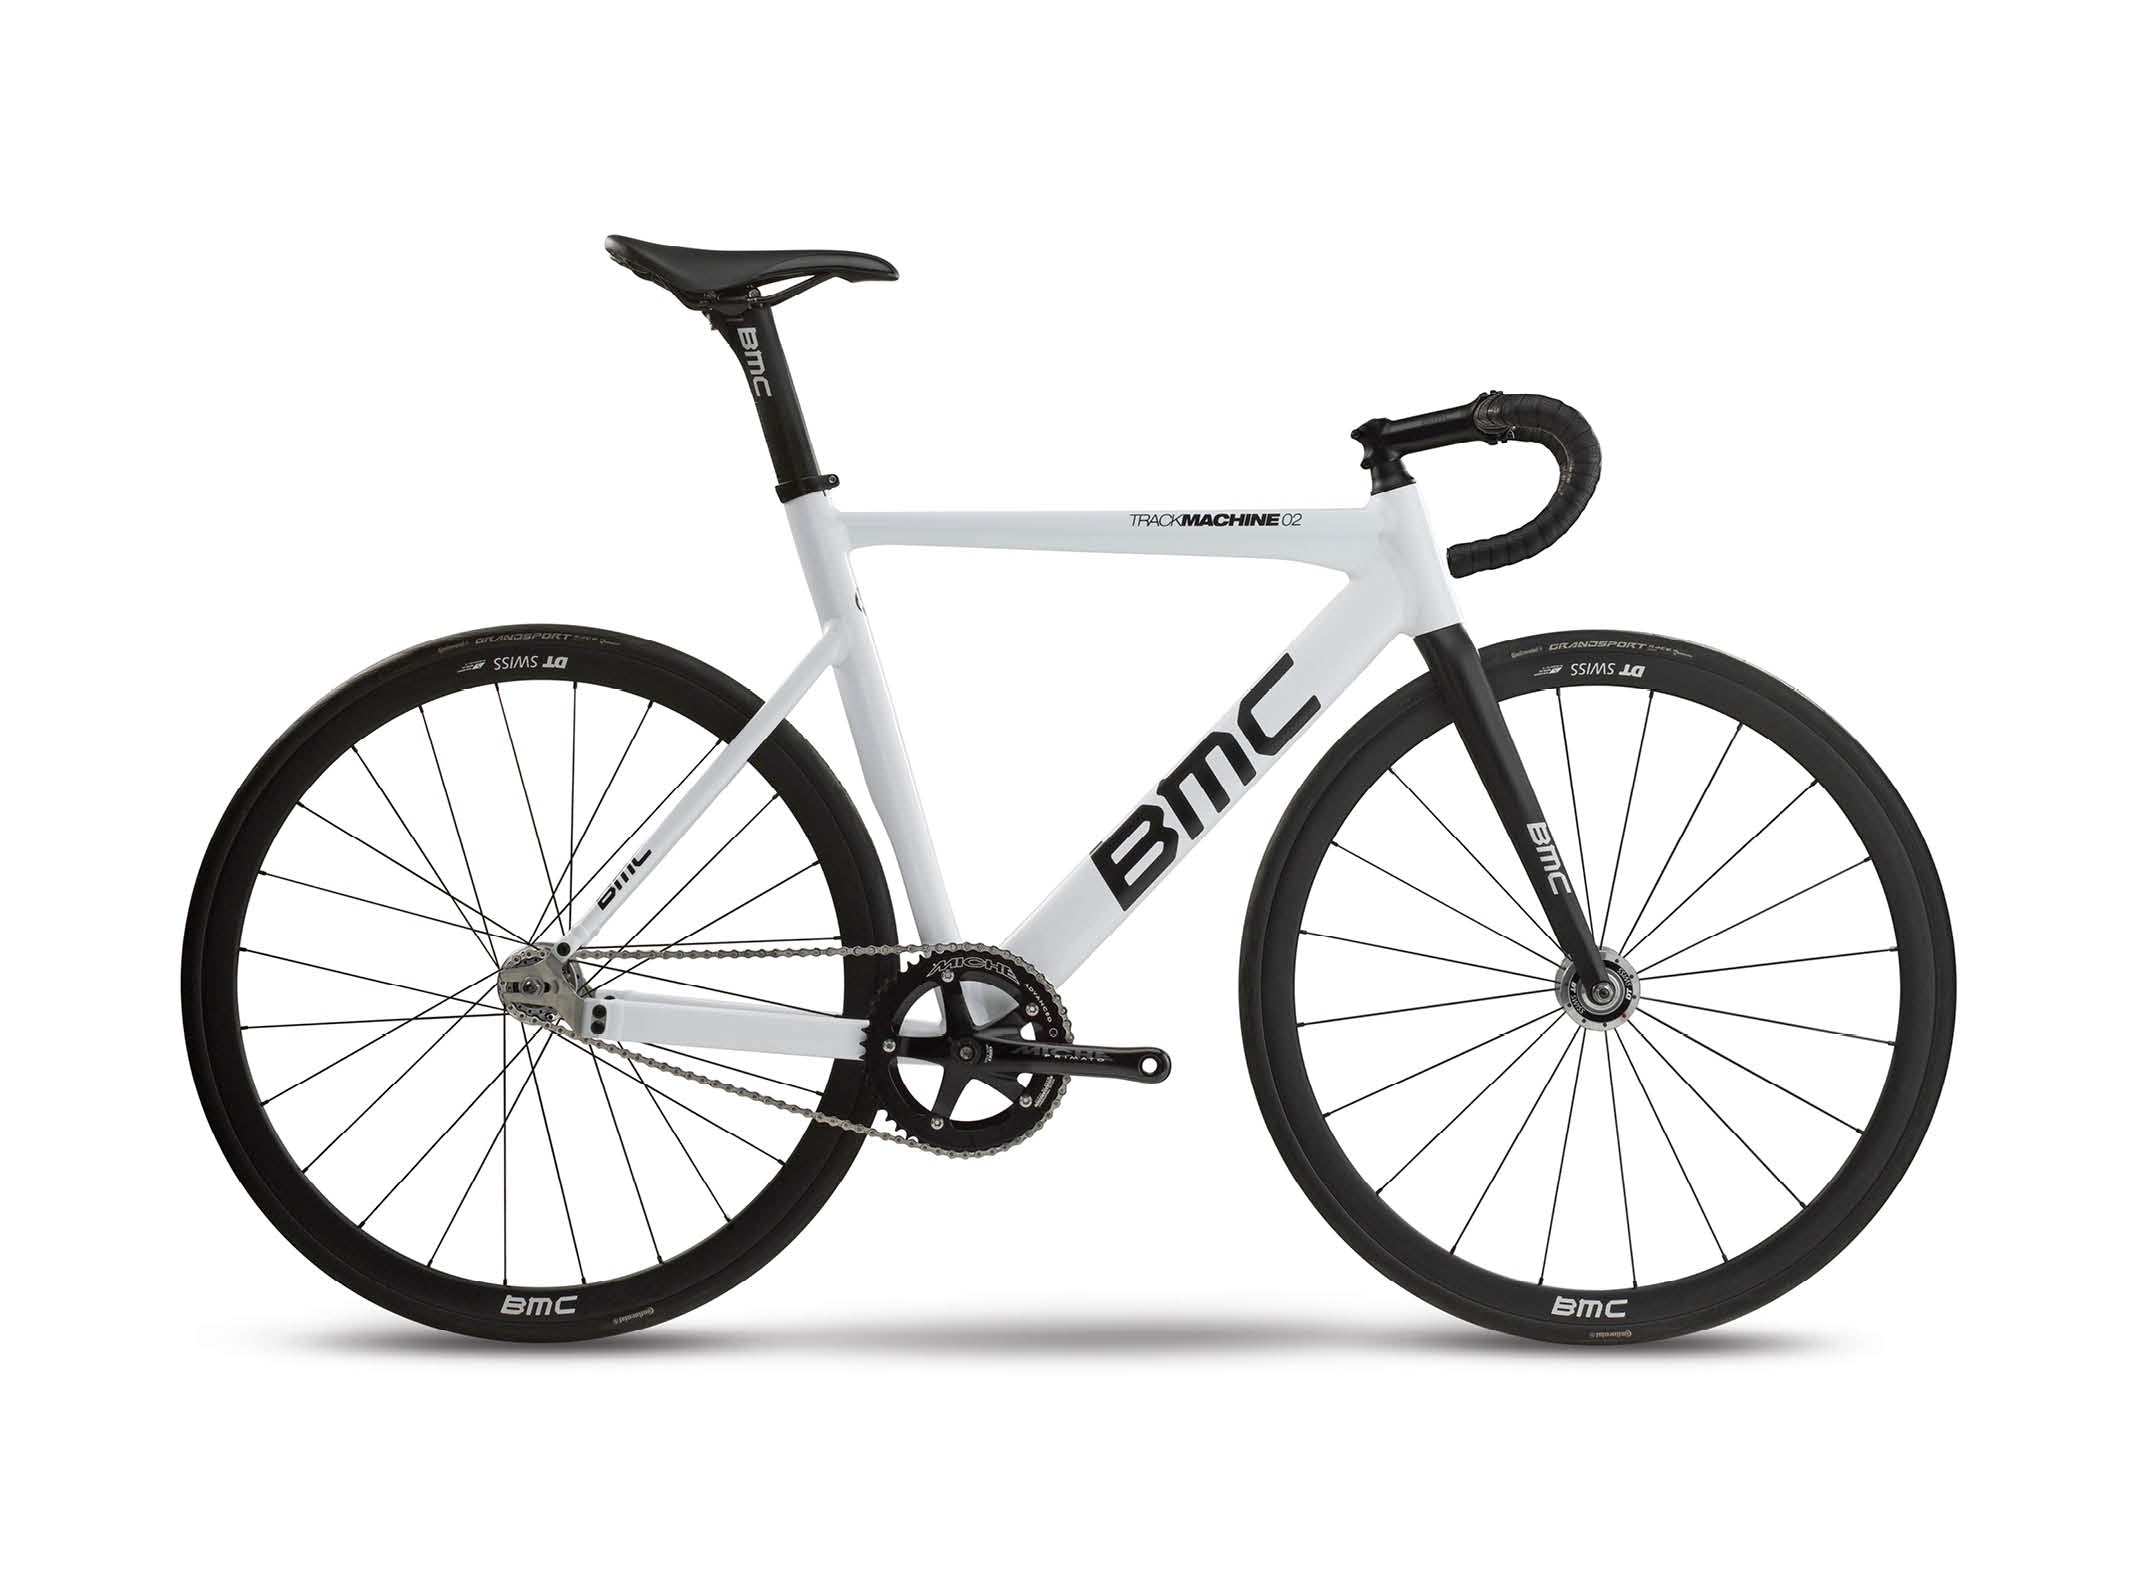 Trackmachine 02 Miche | BMC | bikes | Track, Track | Racing